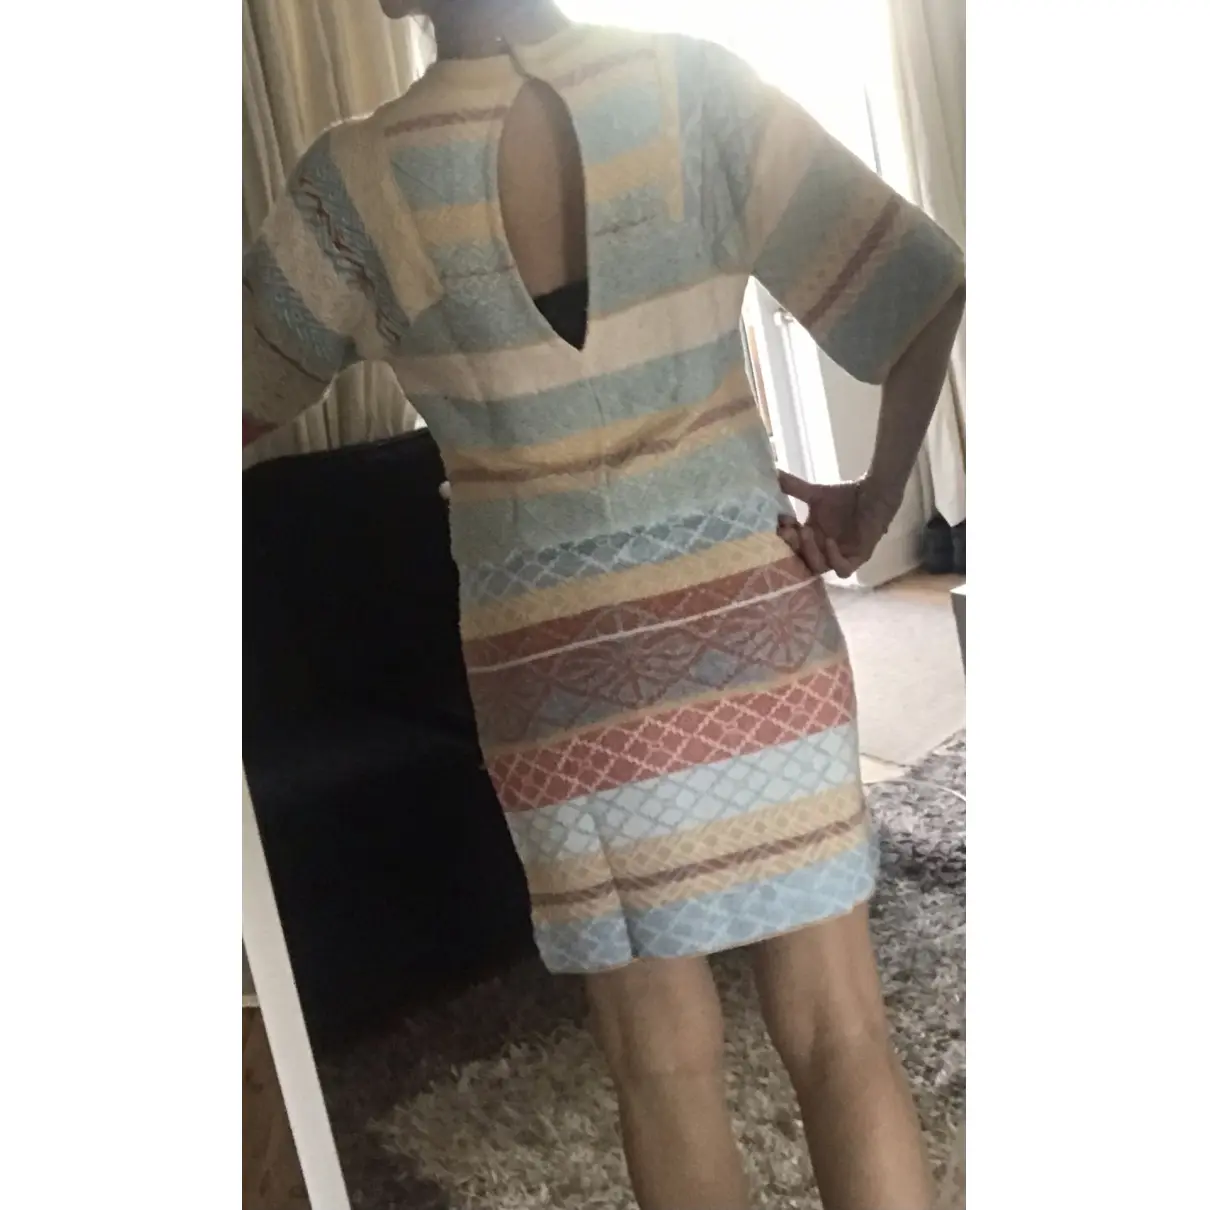 Buy Sonia Rykiel Mid-length dress online - Vintage